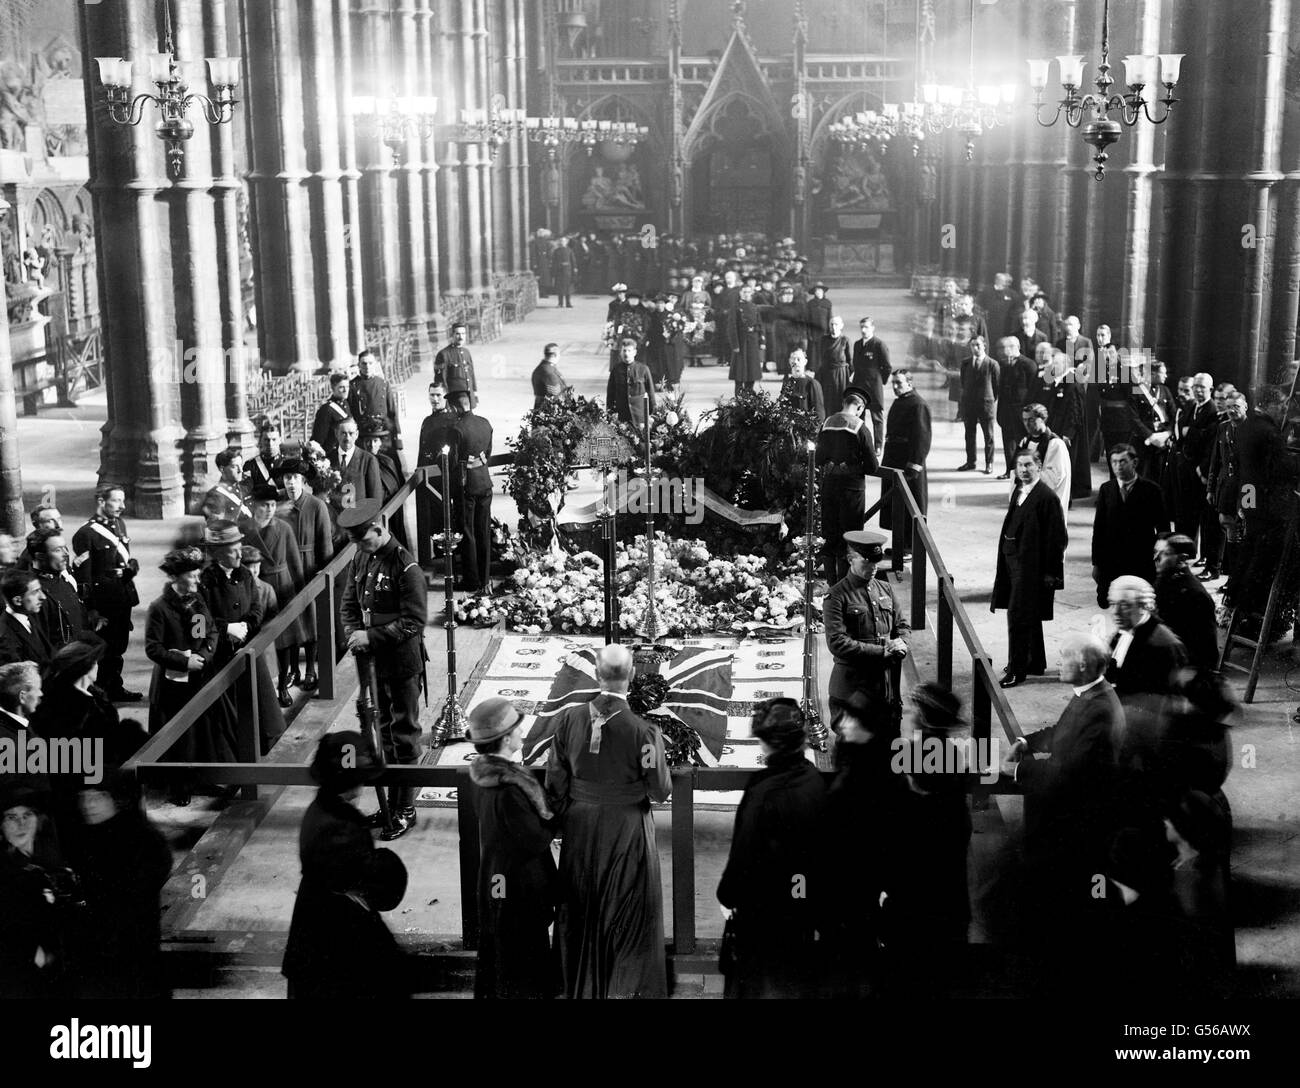 Monumentos - la sepultura del soldado desconocido, la Abadía de Westminster - 1920 Foto de stock